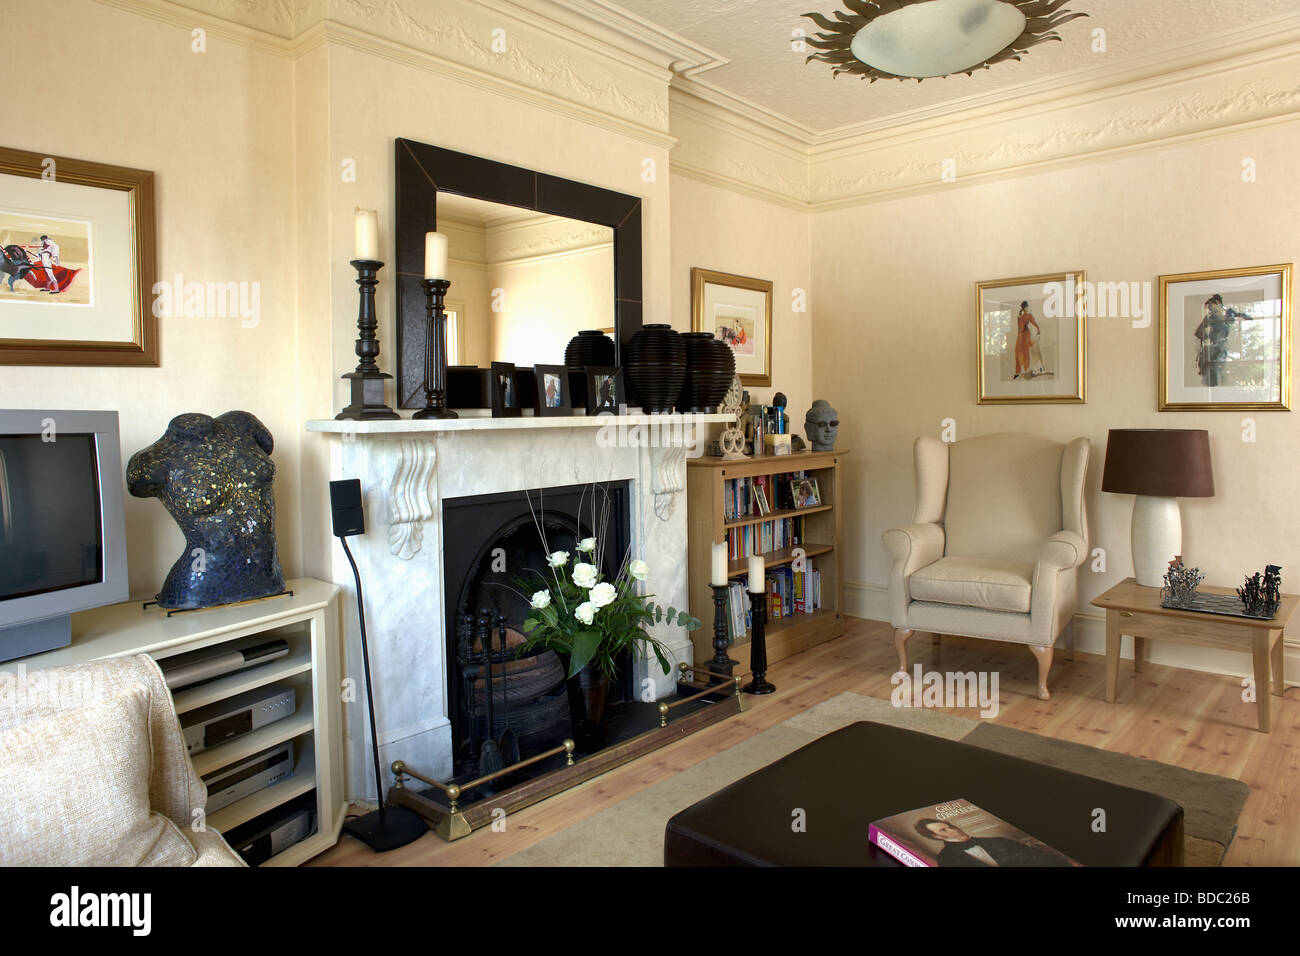 Miroir sur la cheminée de marbre dans la crème traditionnel salon avec fauteuil crème Banque D'Images